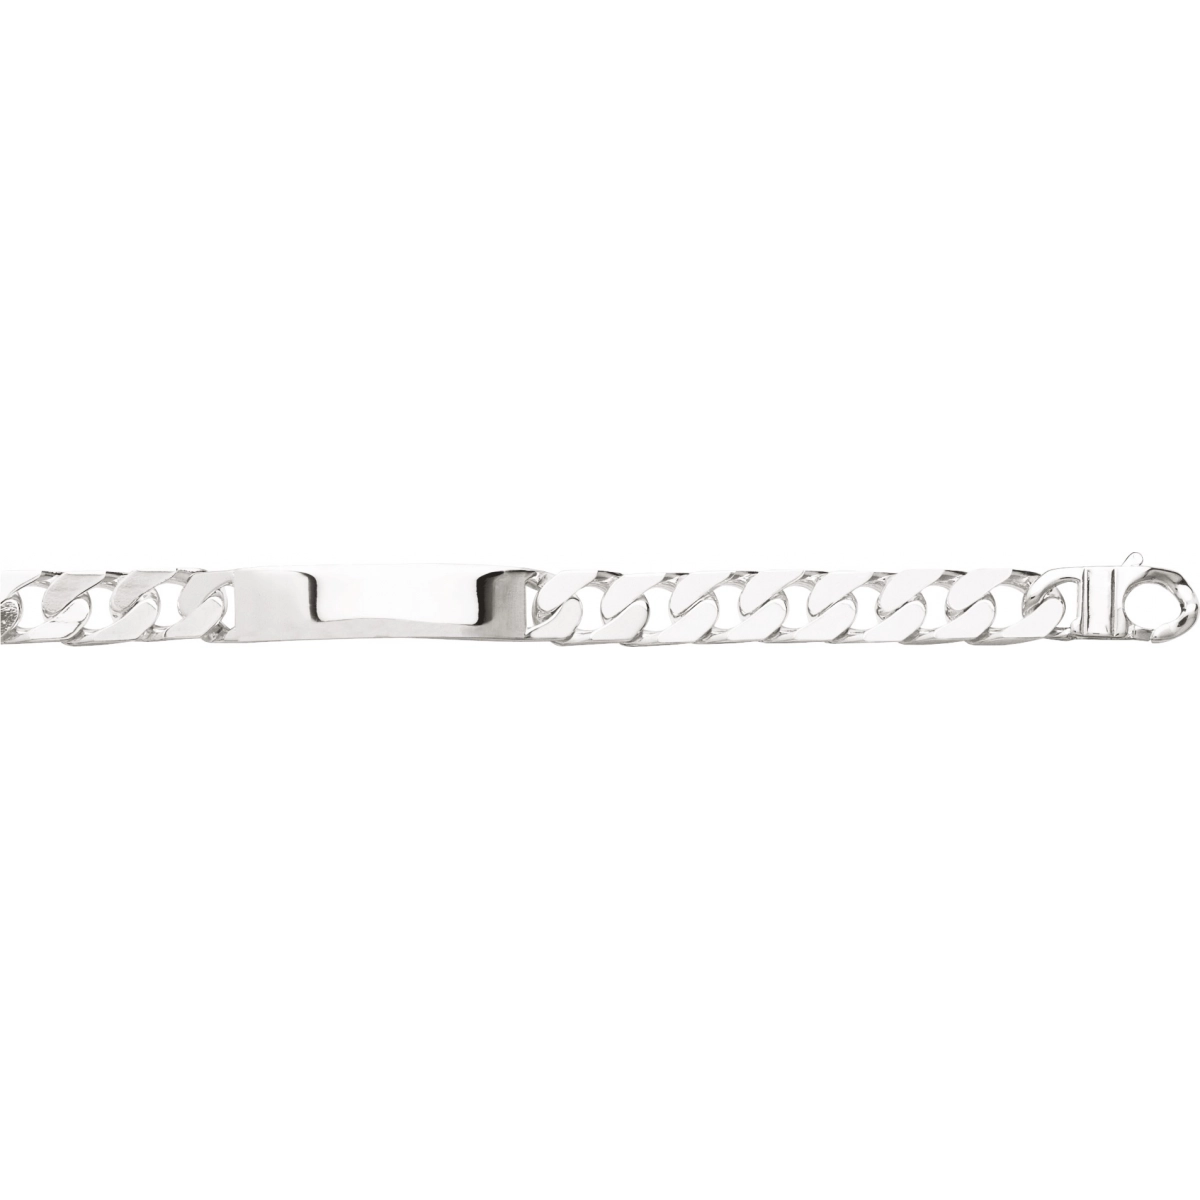 ID bracelet 10mm 925 Silver Lua Blanca  327454.89 - Size 22